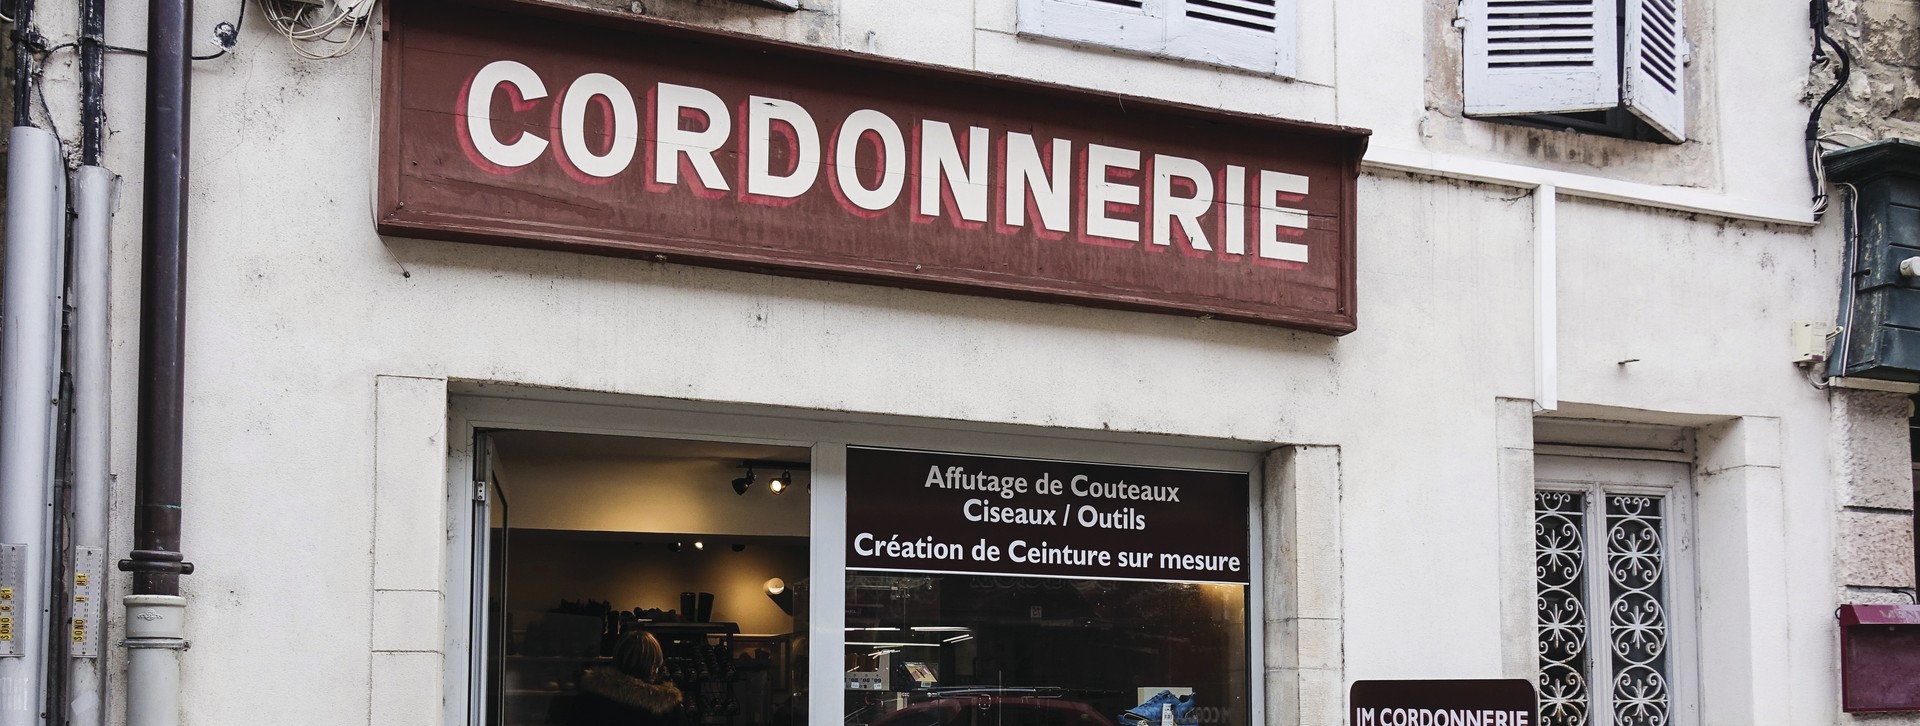 Boutique JM CORDONNERIE - Beaune